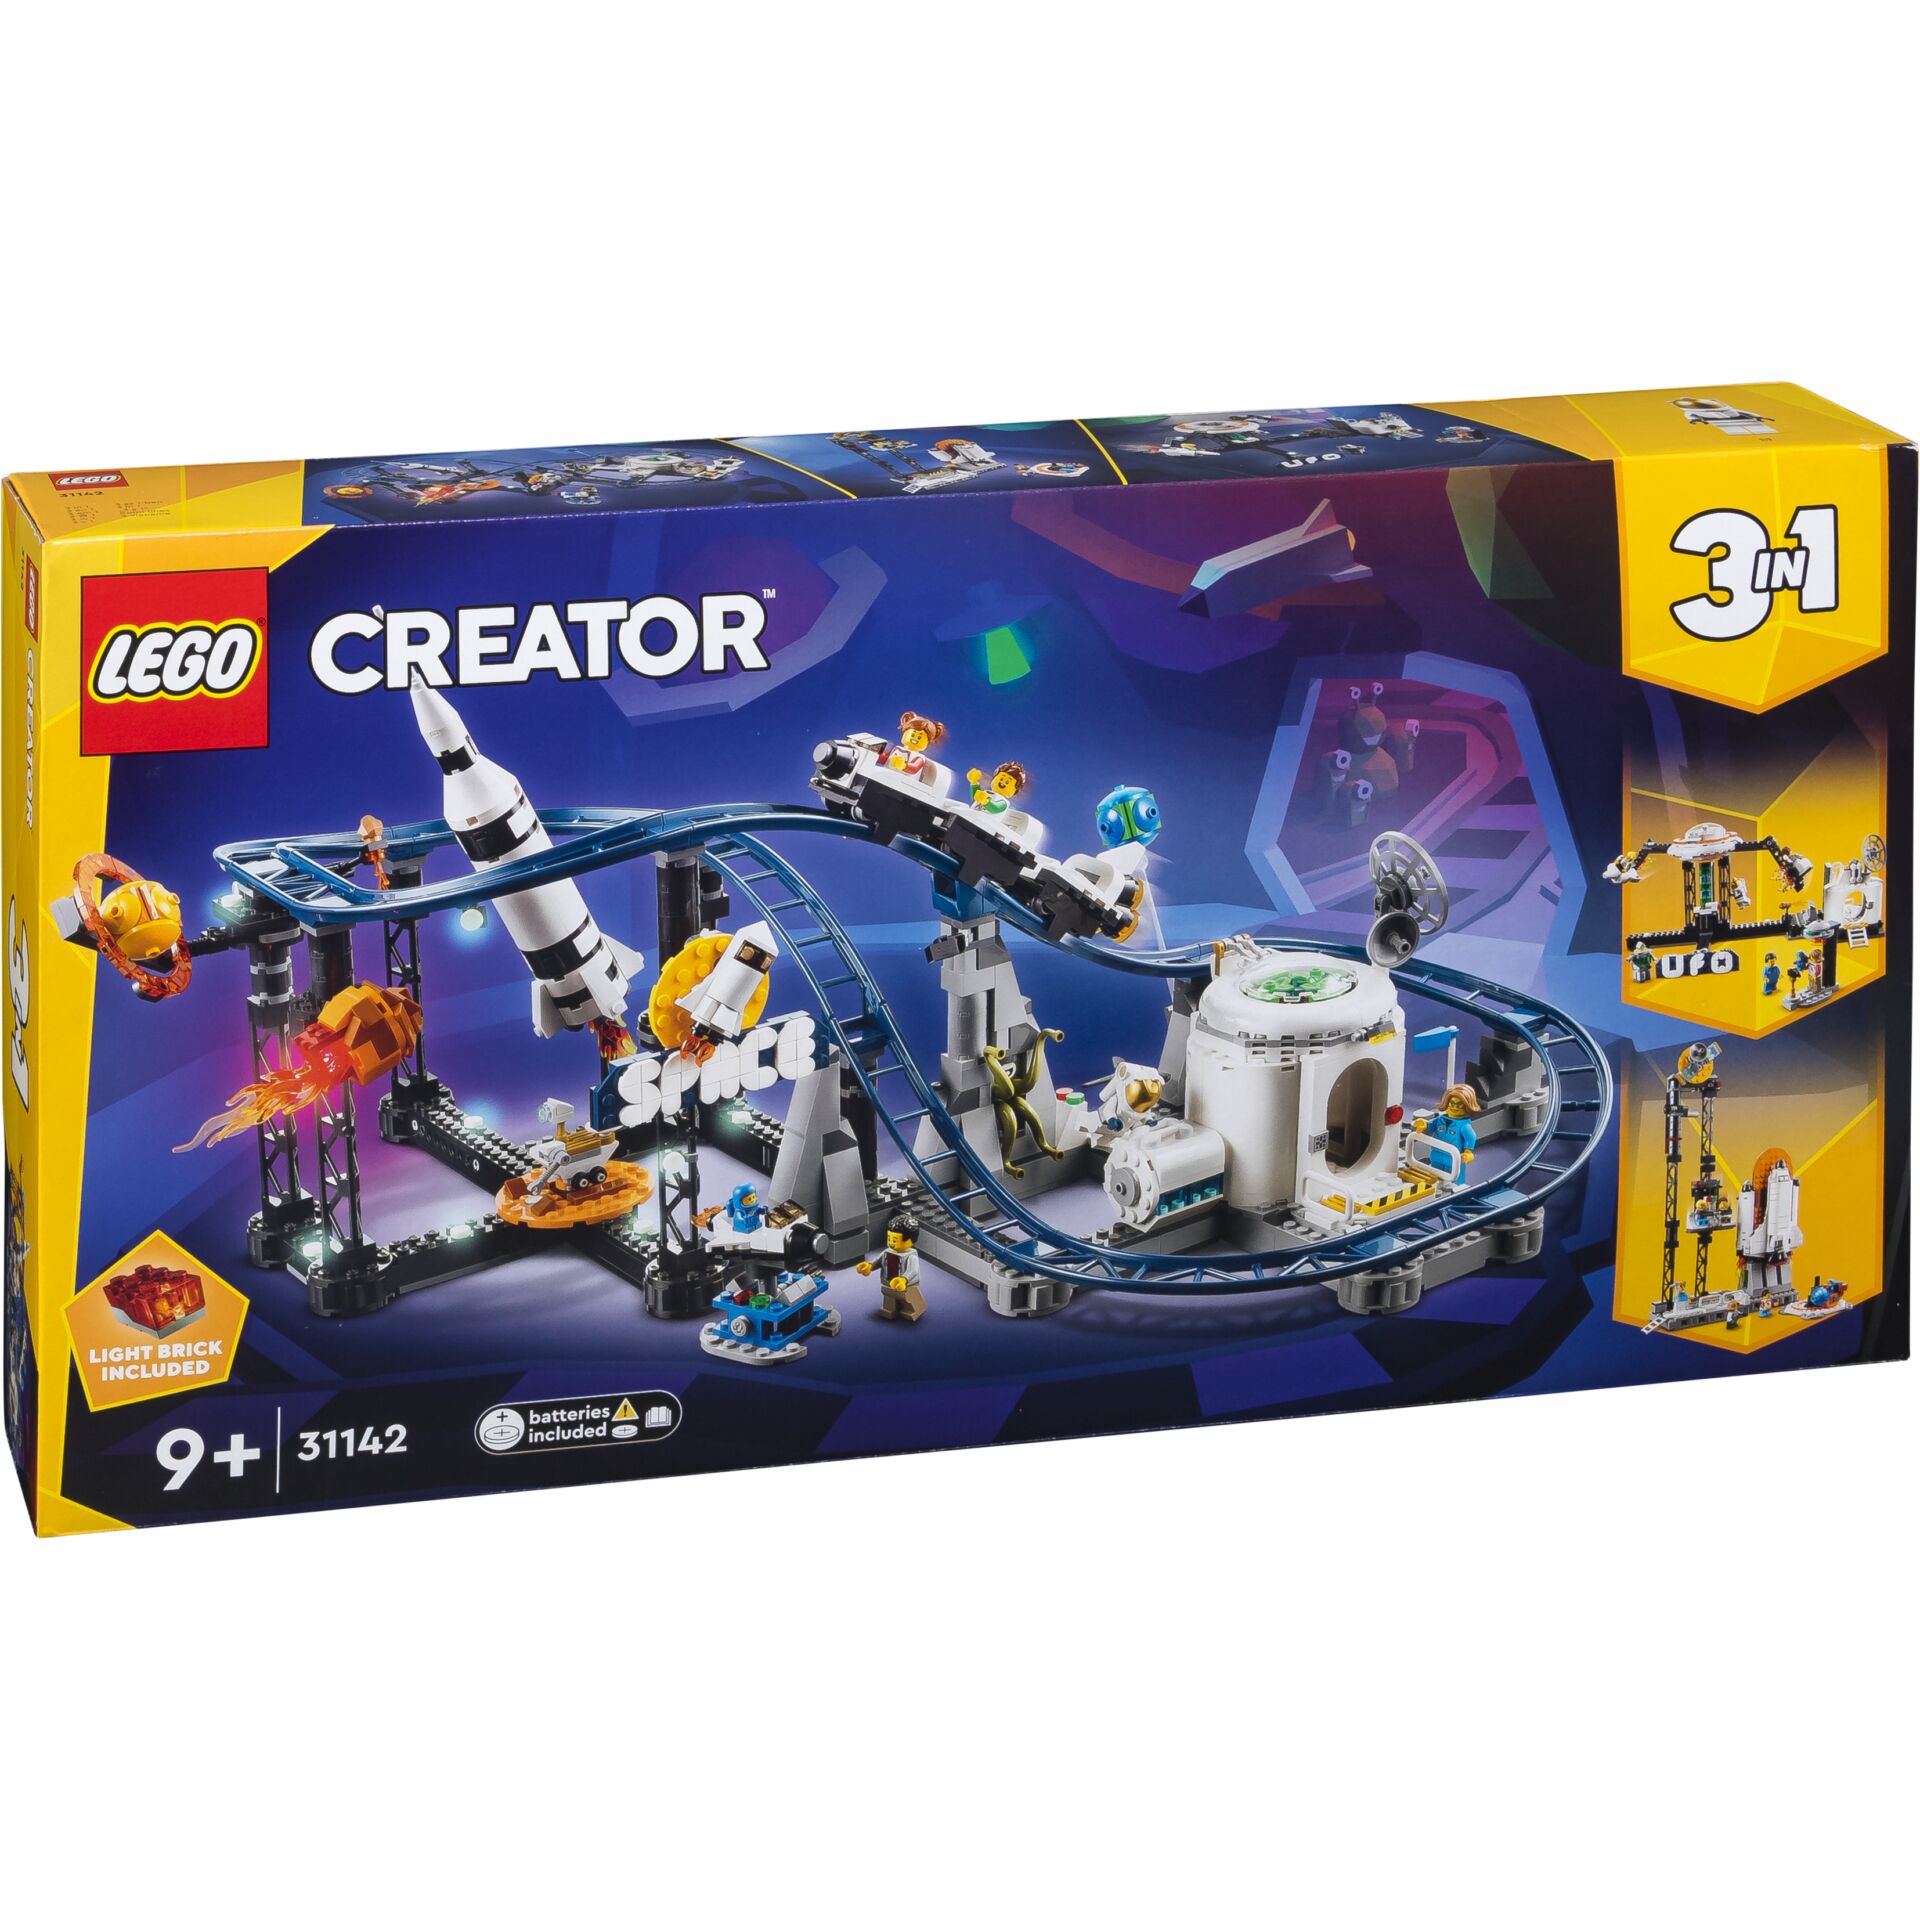 LEGO Creator 3in1 - Weltraum-Achterbahn